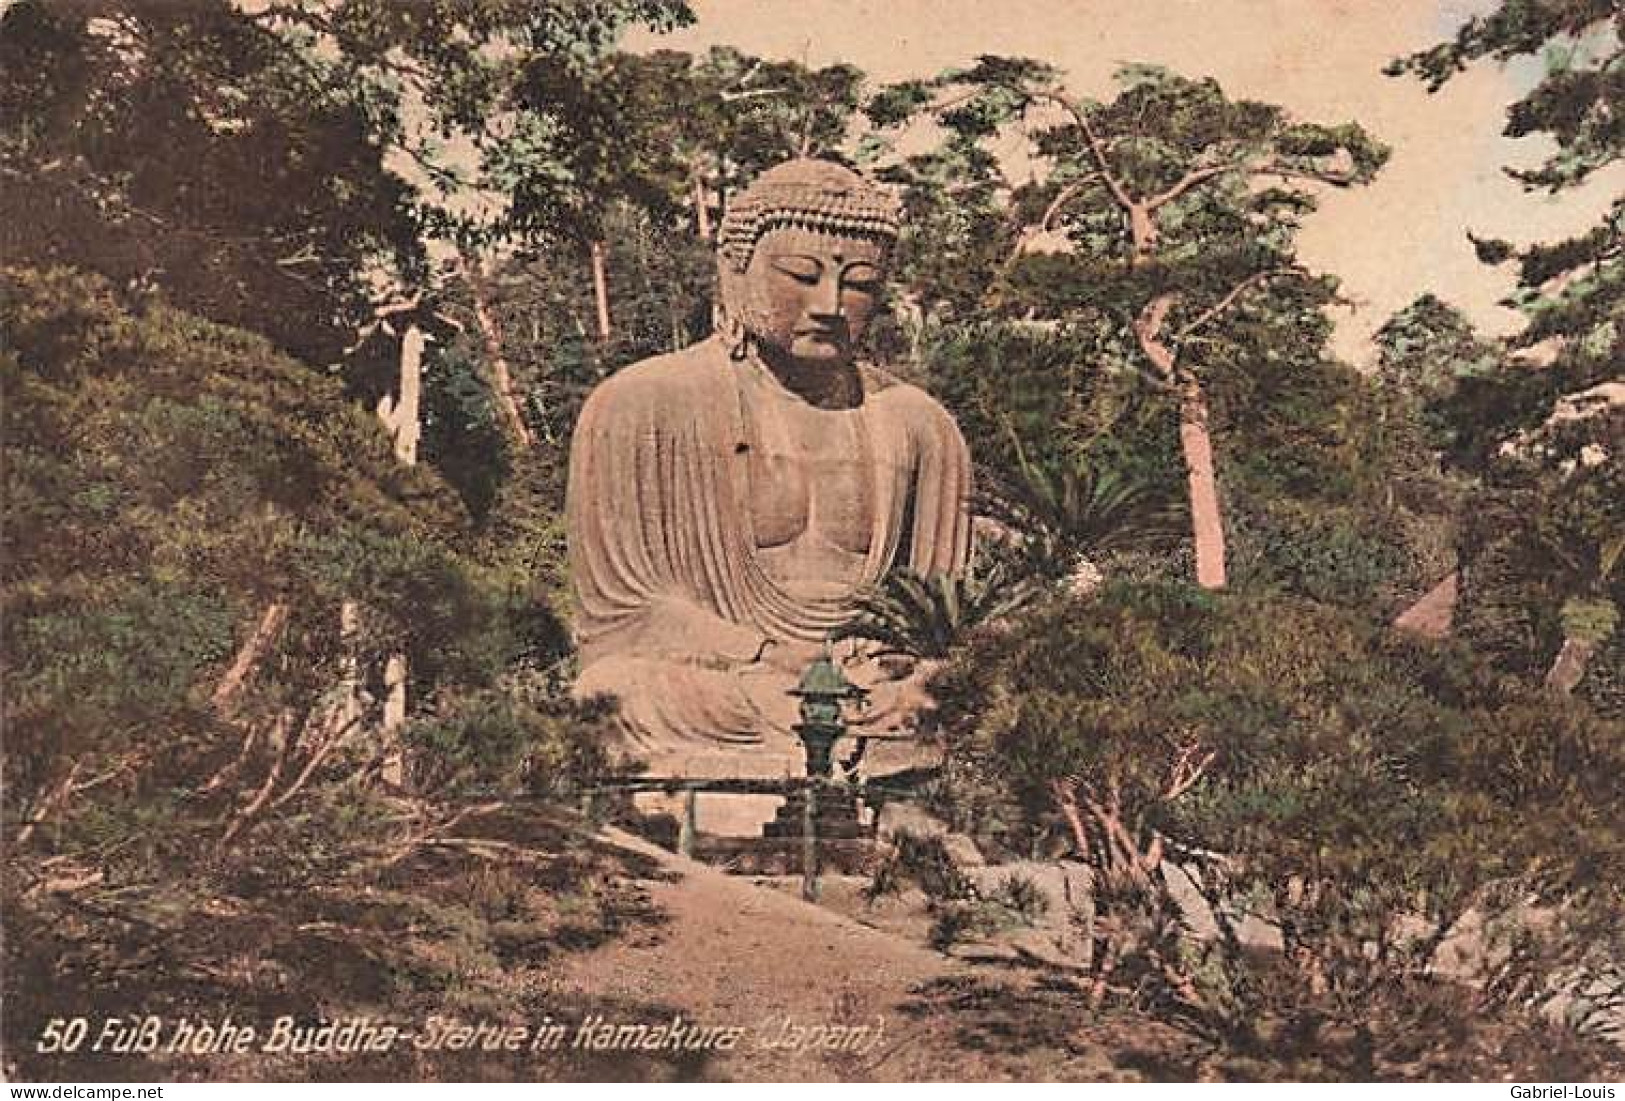 Hohe Buddha Statue In Kamakura Japan - Yokohama